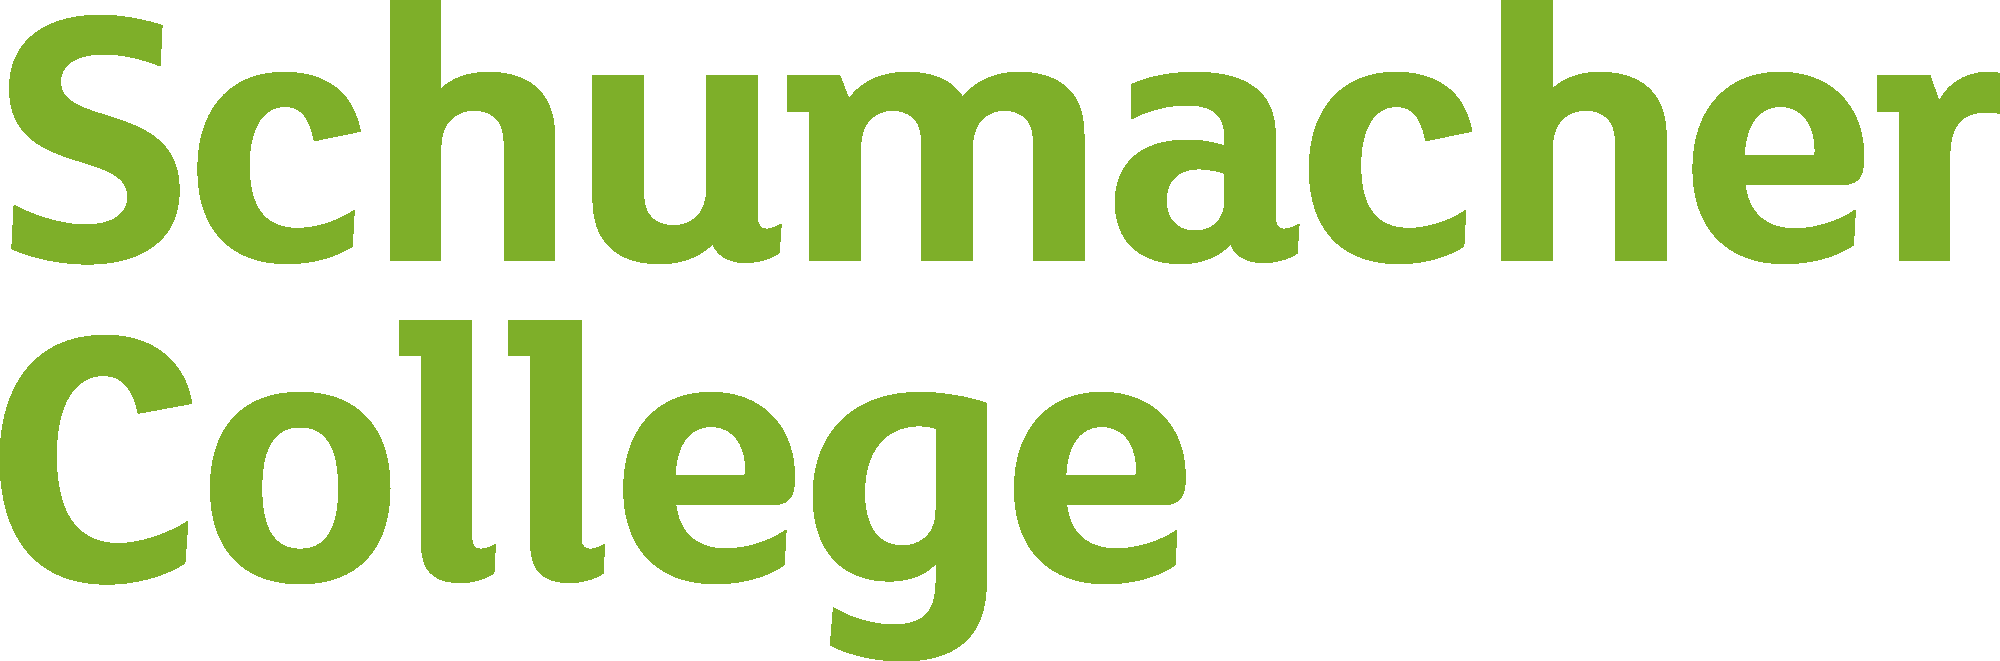 Schumacher Collegen logo